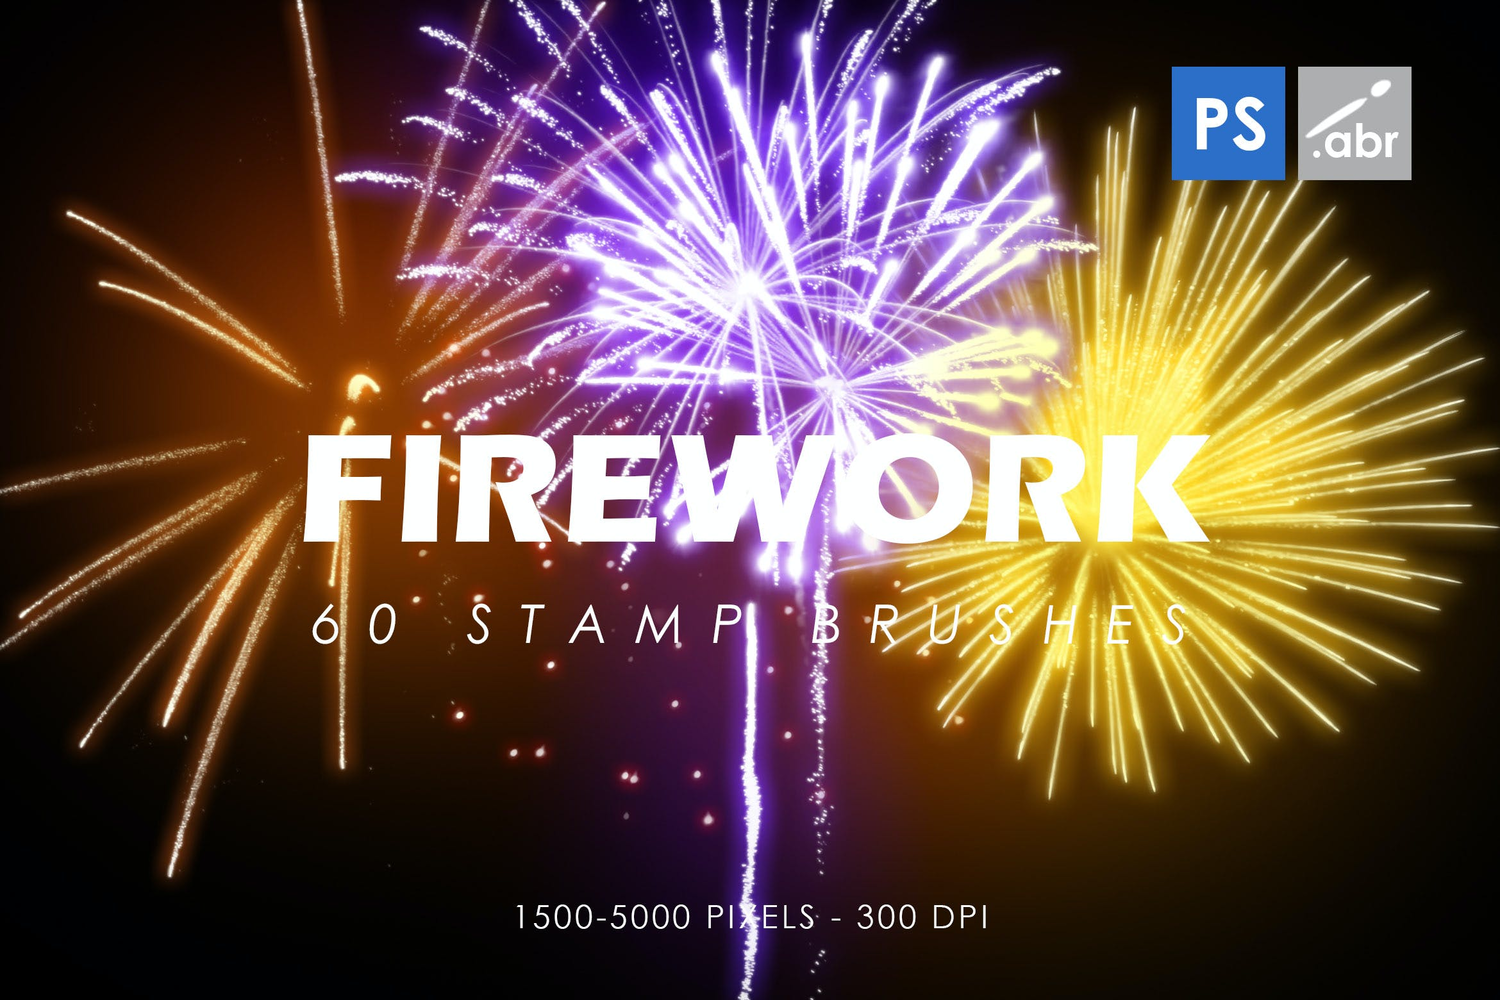 3942 60款烟花烟火礼花爆炸派对庆典ps笔刷设计素材模板 60 Firework Stamp Brushes@GOOODME.COM